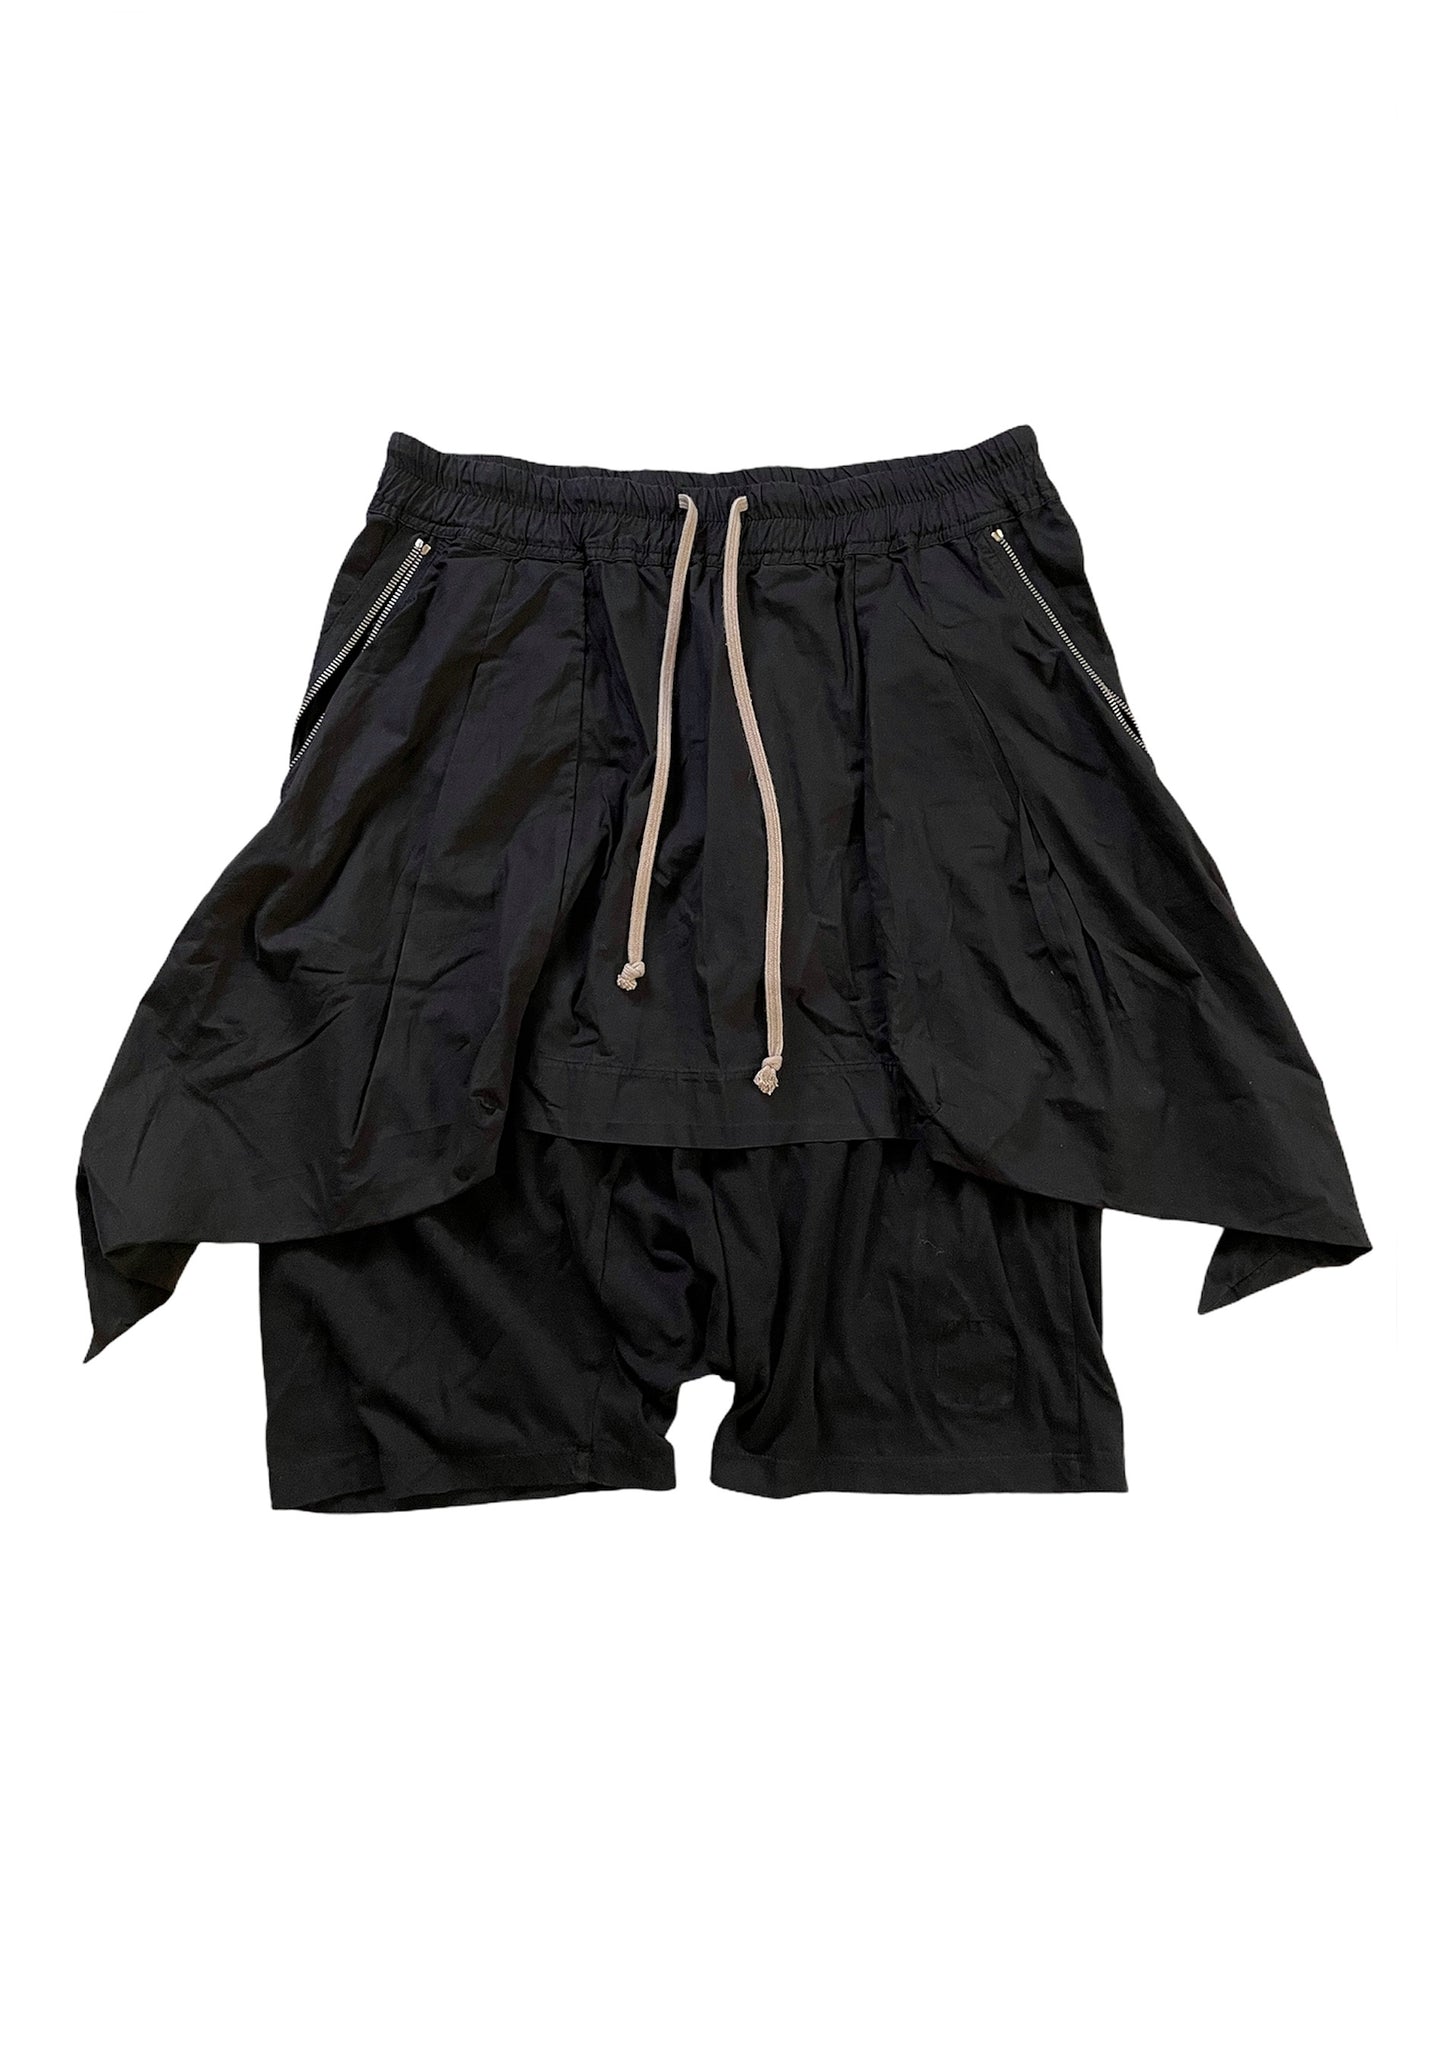 OG Skirted Zip Shorts